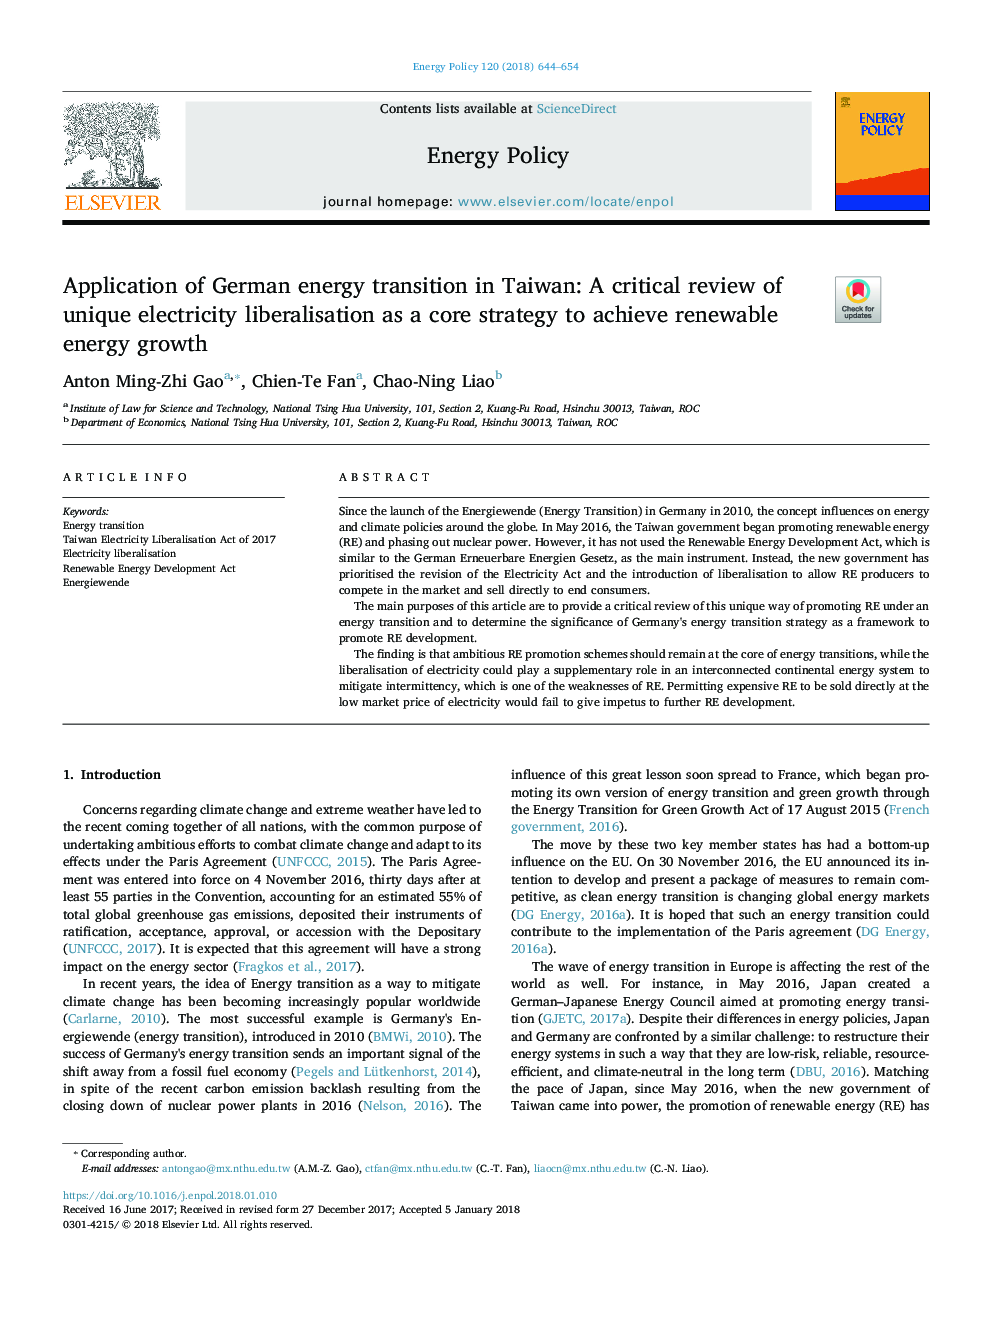 استفاده از انتقال انرژی آلمان در تایوان: بررسی بحرانی لیبرالیزاسیون برق منحصر به فرد به عنوان یک استراتژی اصلی برای دستیابی به رشد انرژی تجدیدپذیر 